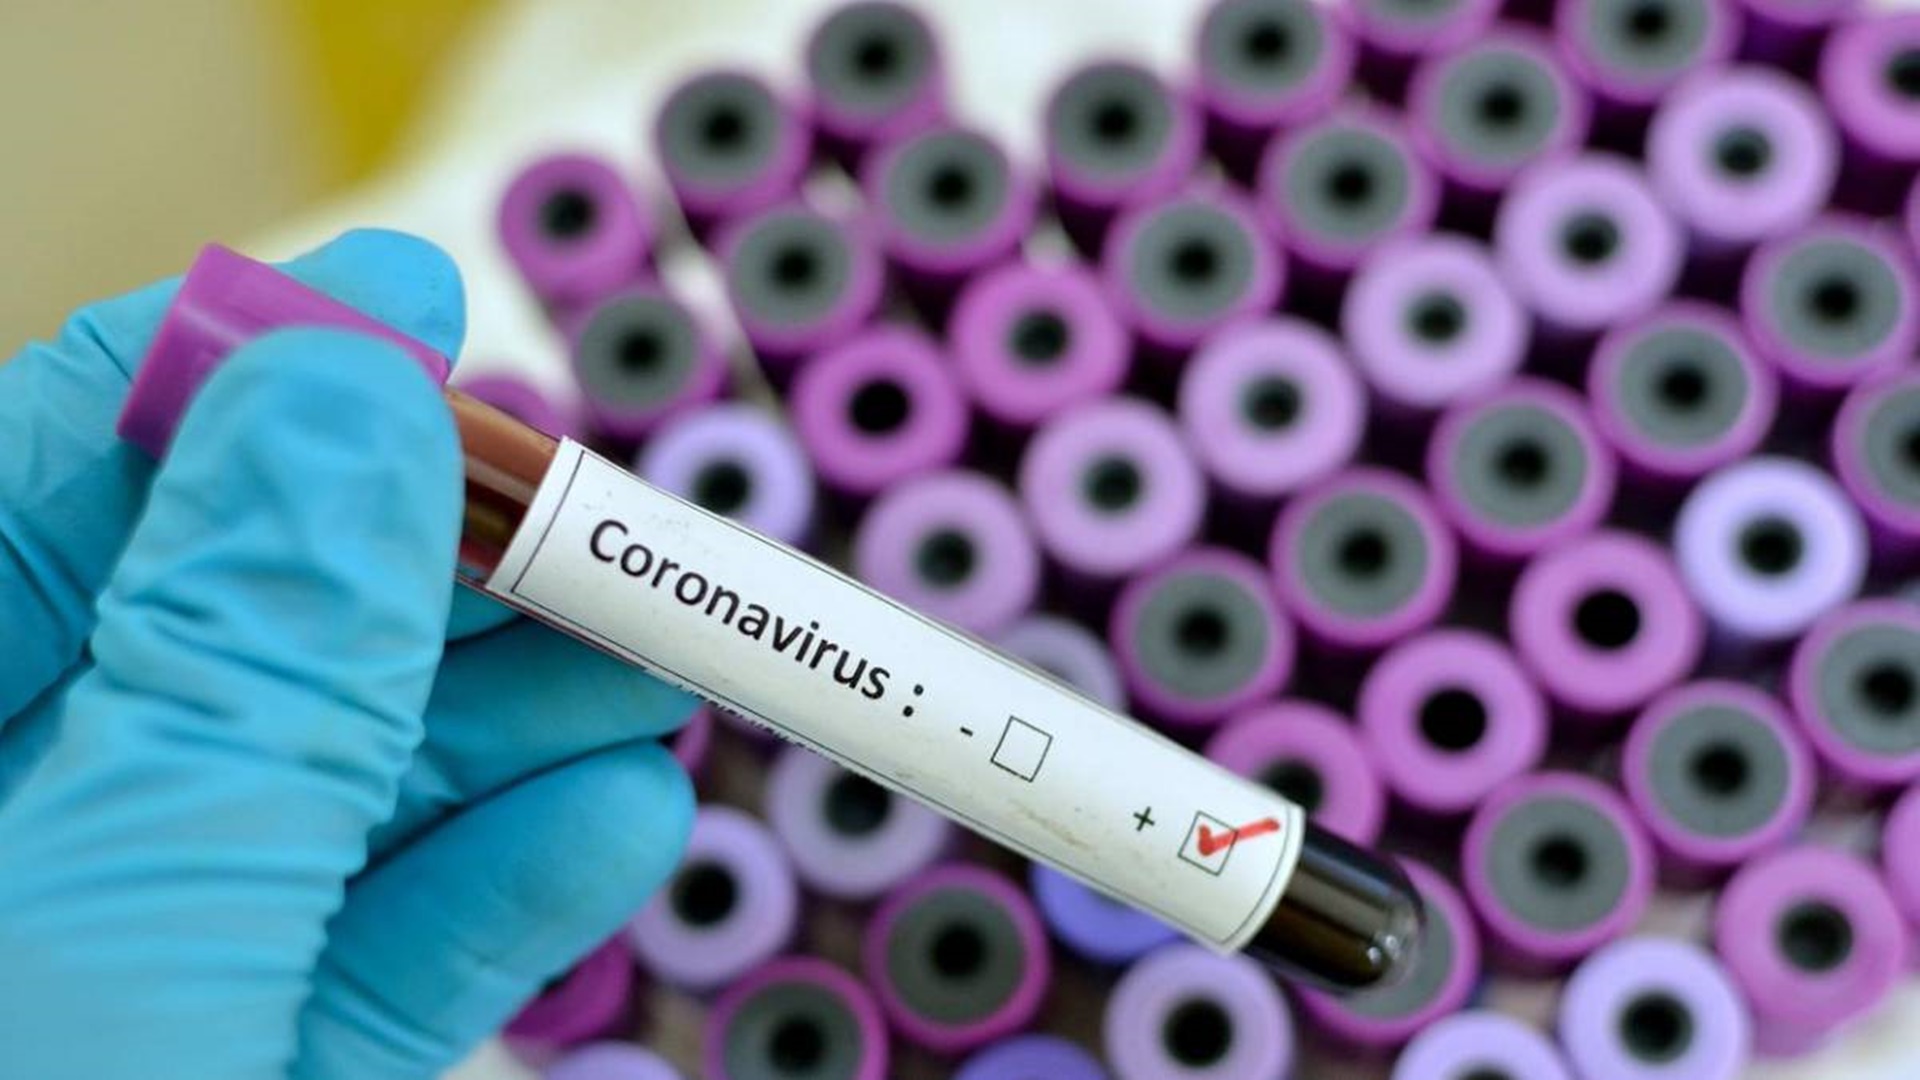 20200205123126_1200_675_-_coronavirus